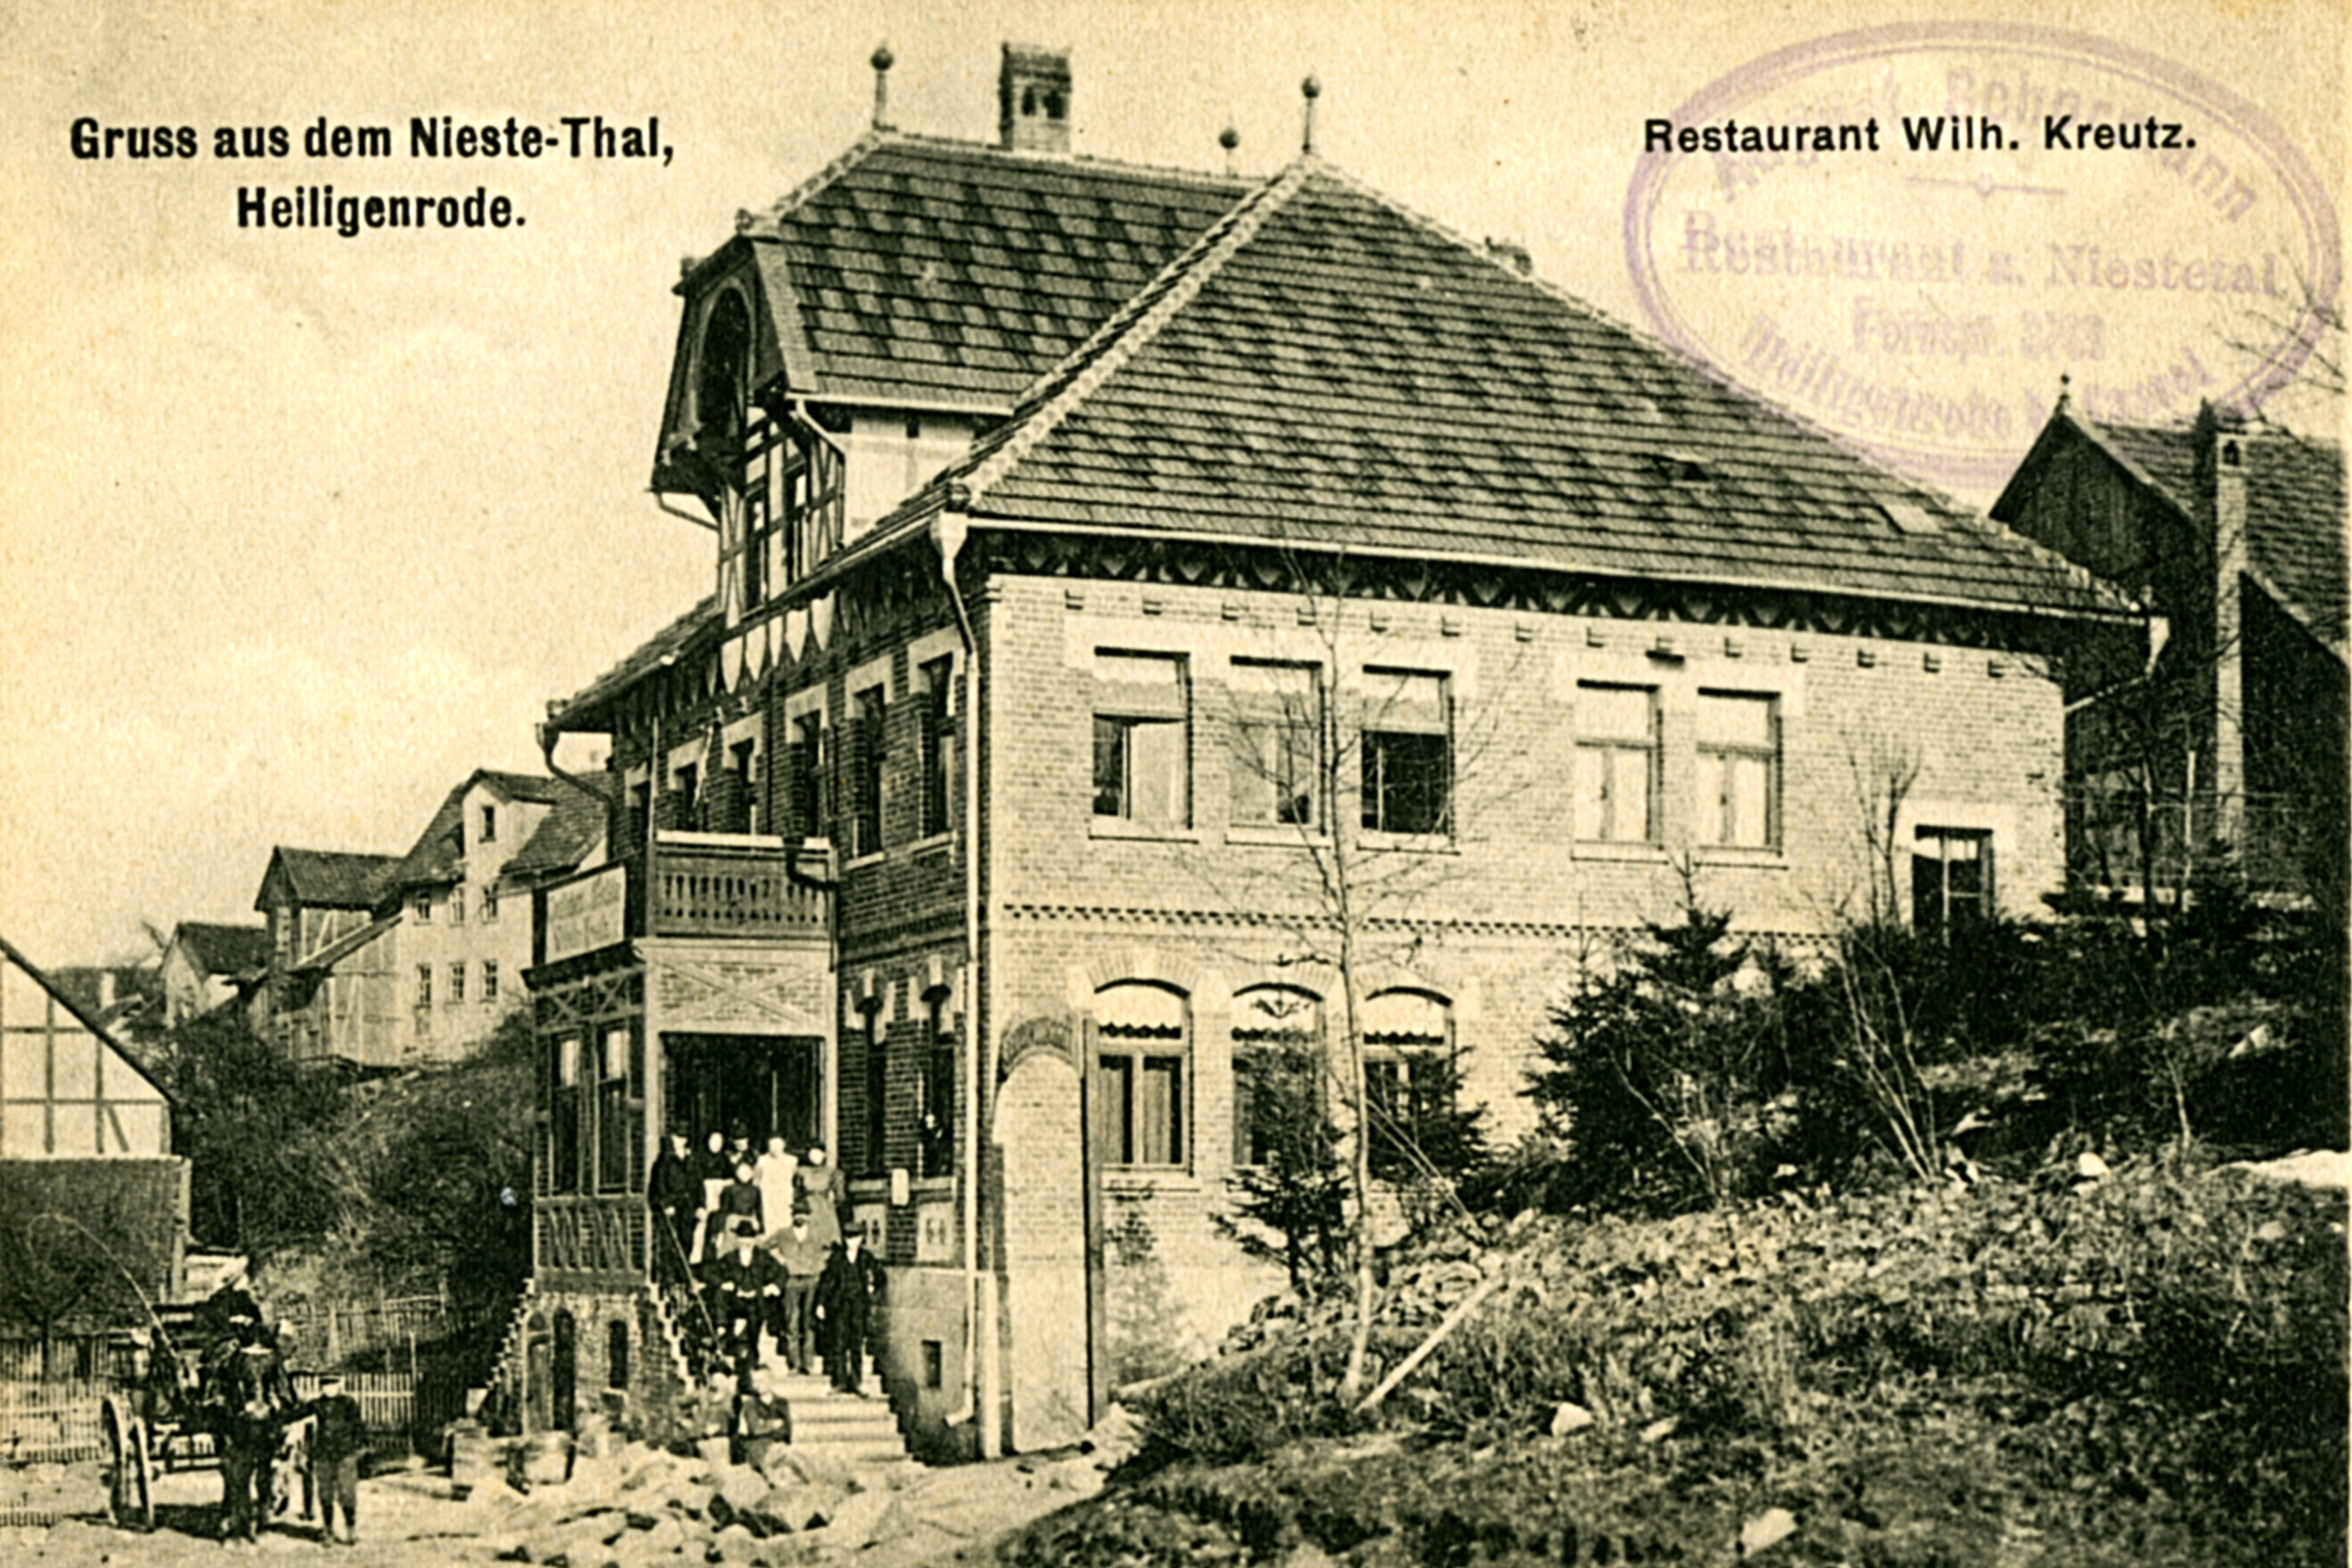 Gruß aus dem Nieste-Thal. Das Restaurant Kreutz um die Jahrhundertwende.